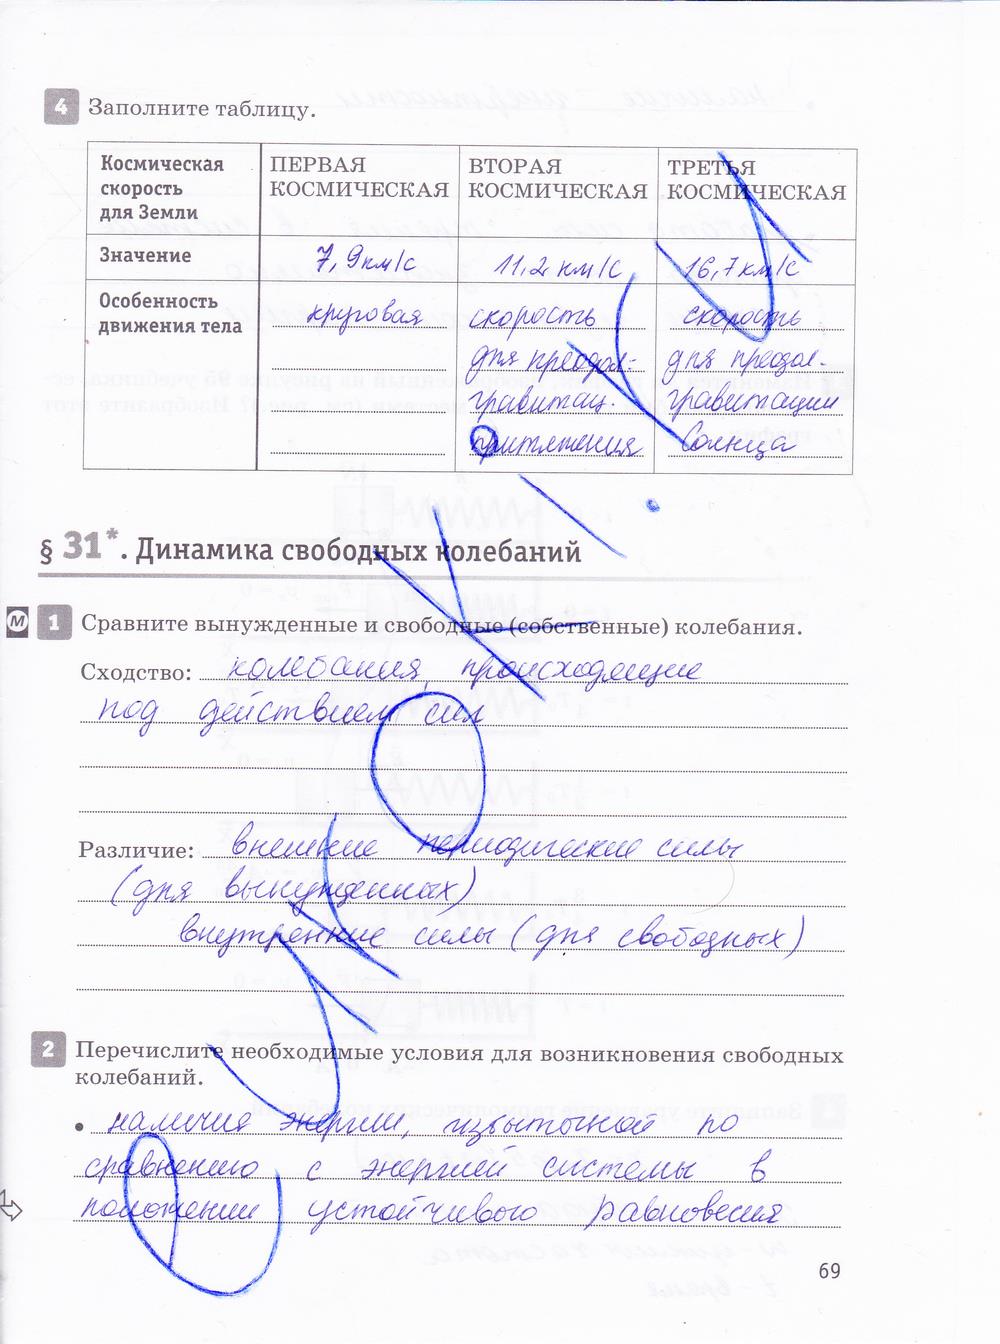 гдз 10 класс рабочая тетрадь страница 69 физика Касьянов, Дмитриева